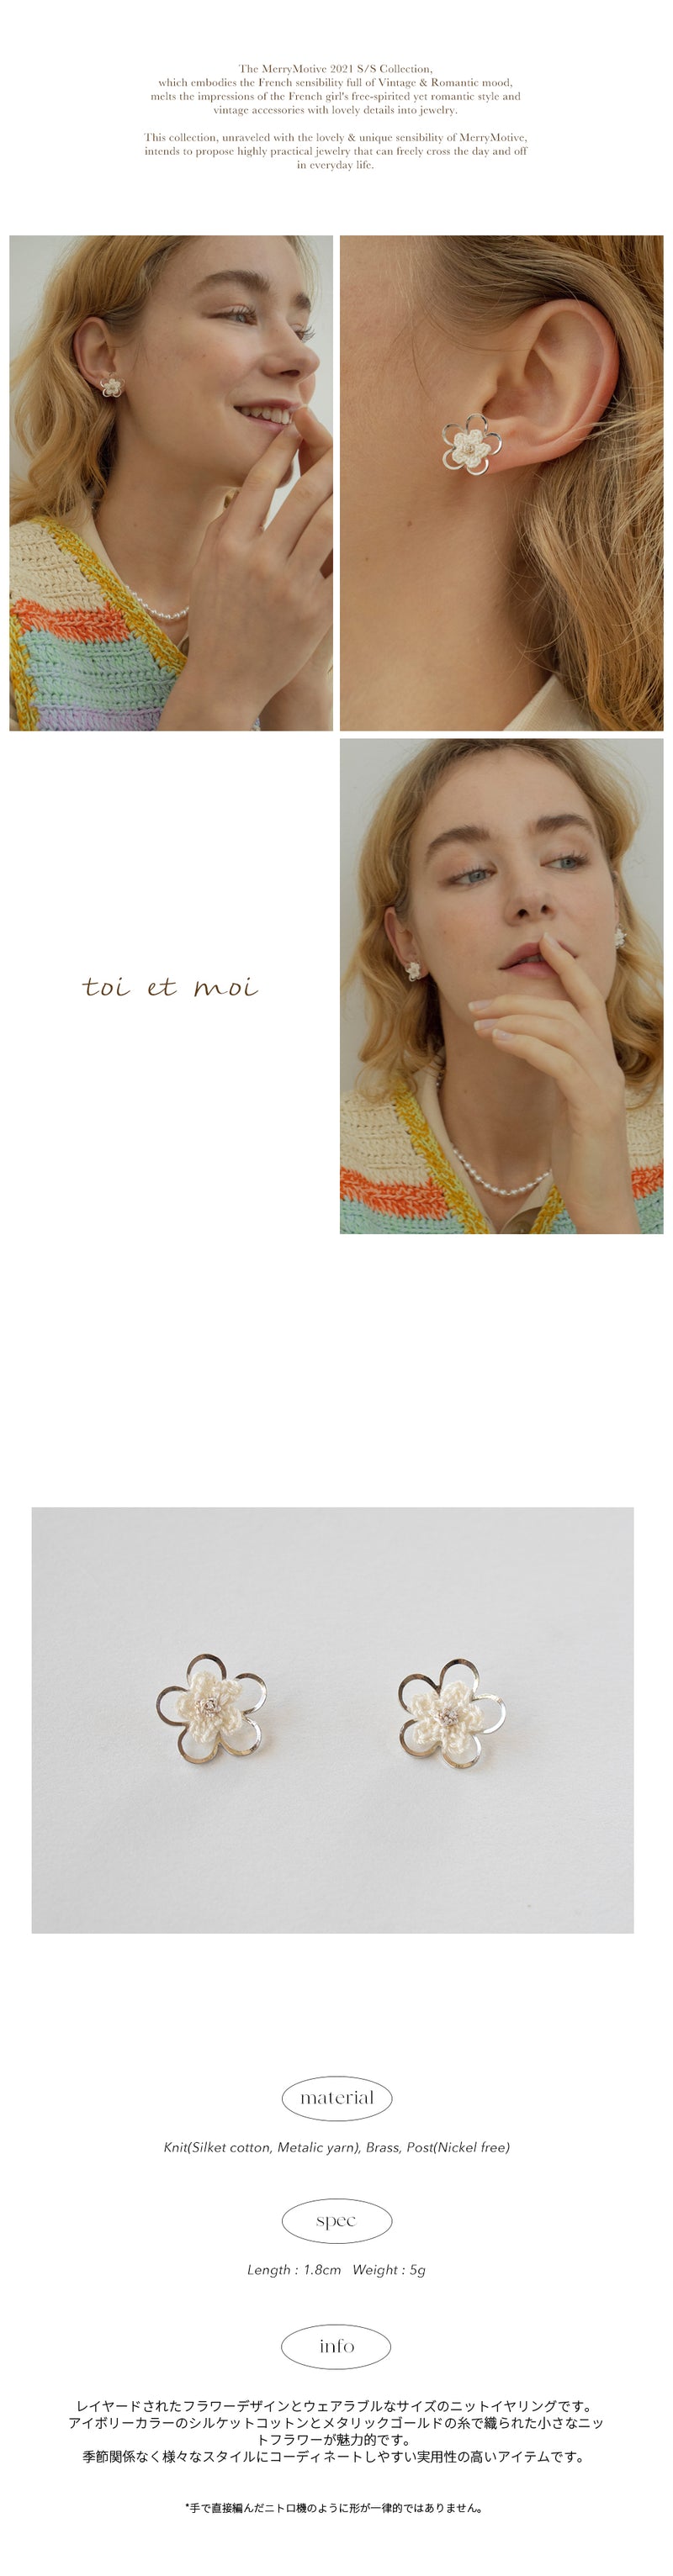 [ITZY-Lia, Jeonhyebin] Silver line double flower knit earring (6625407500406)